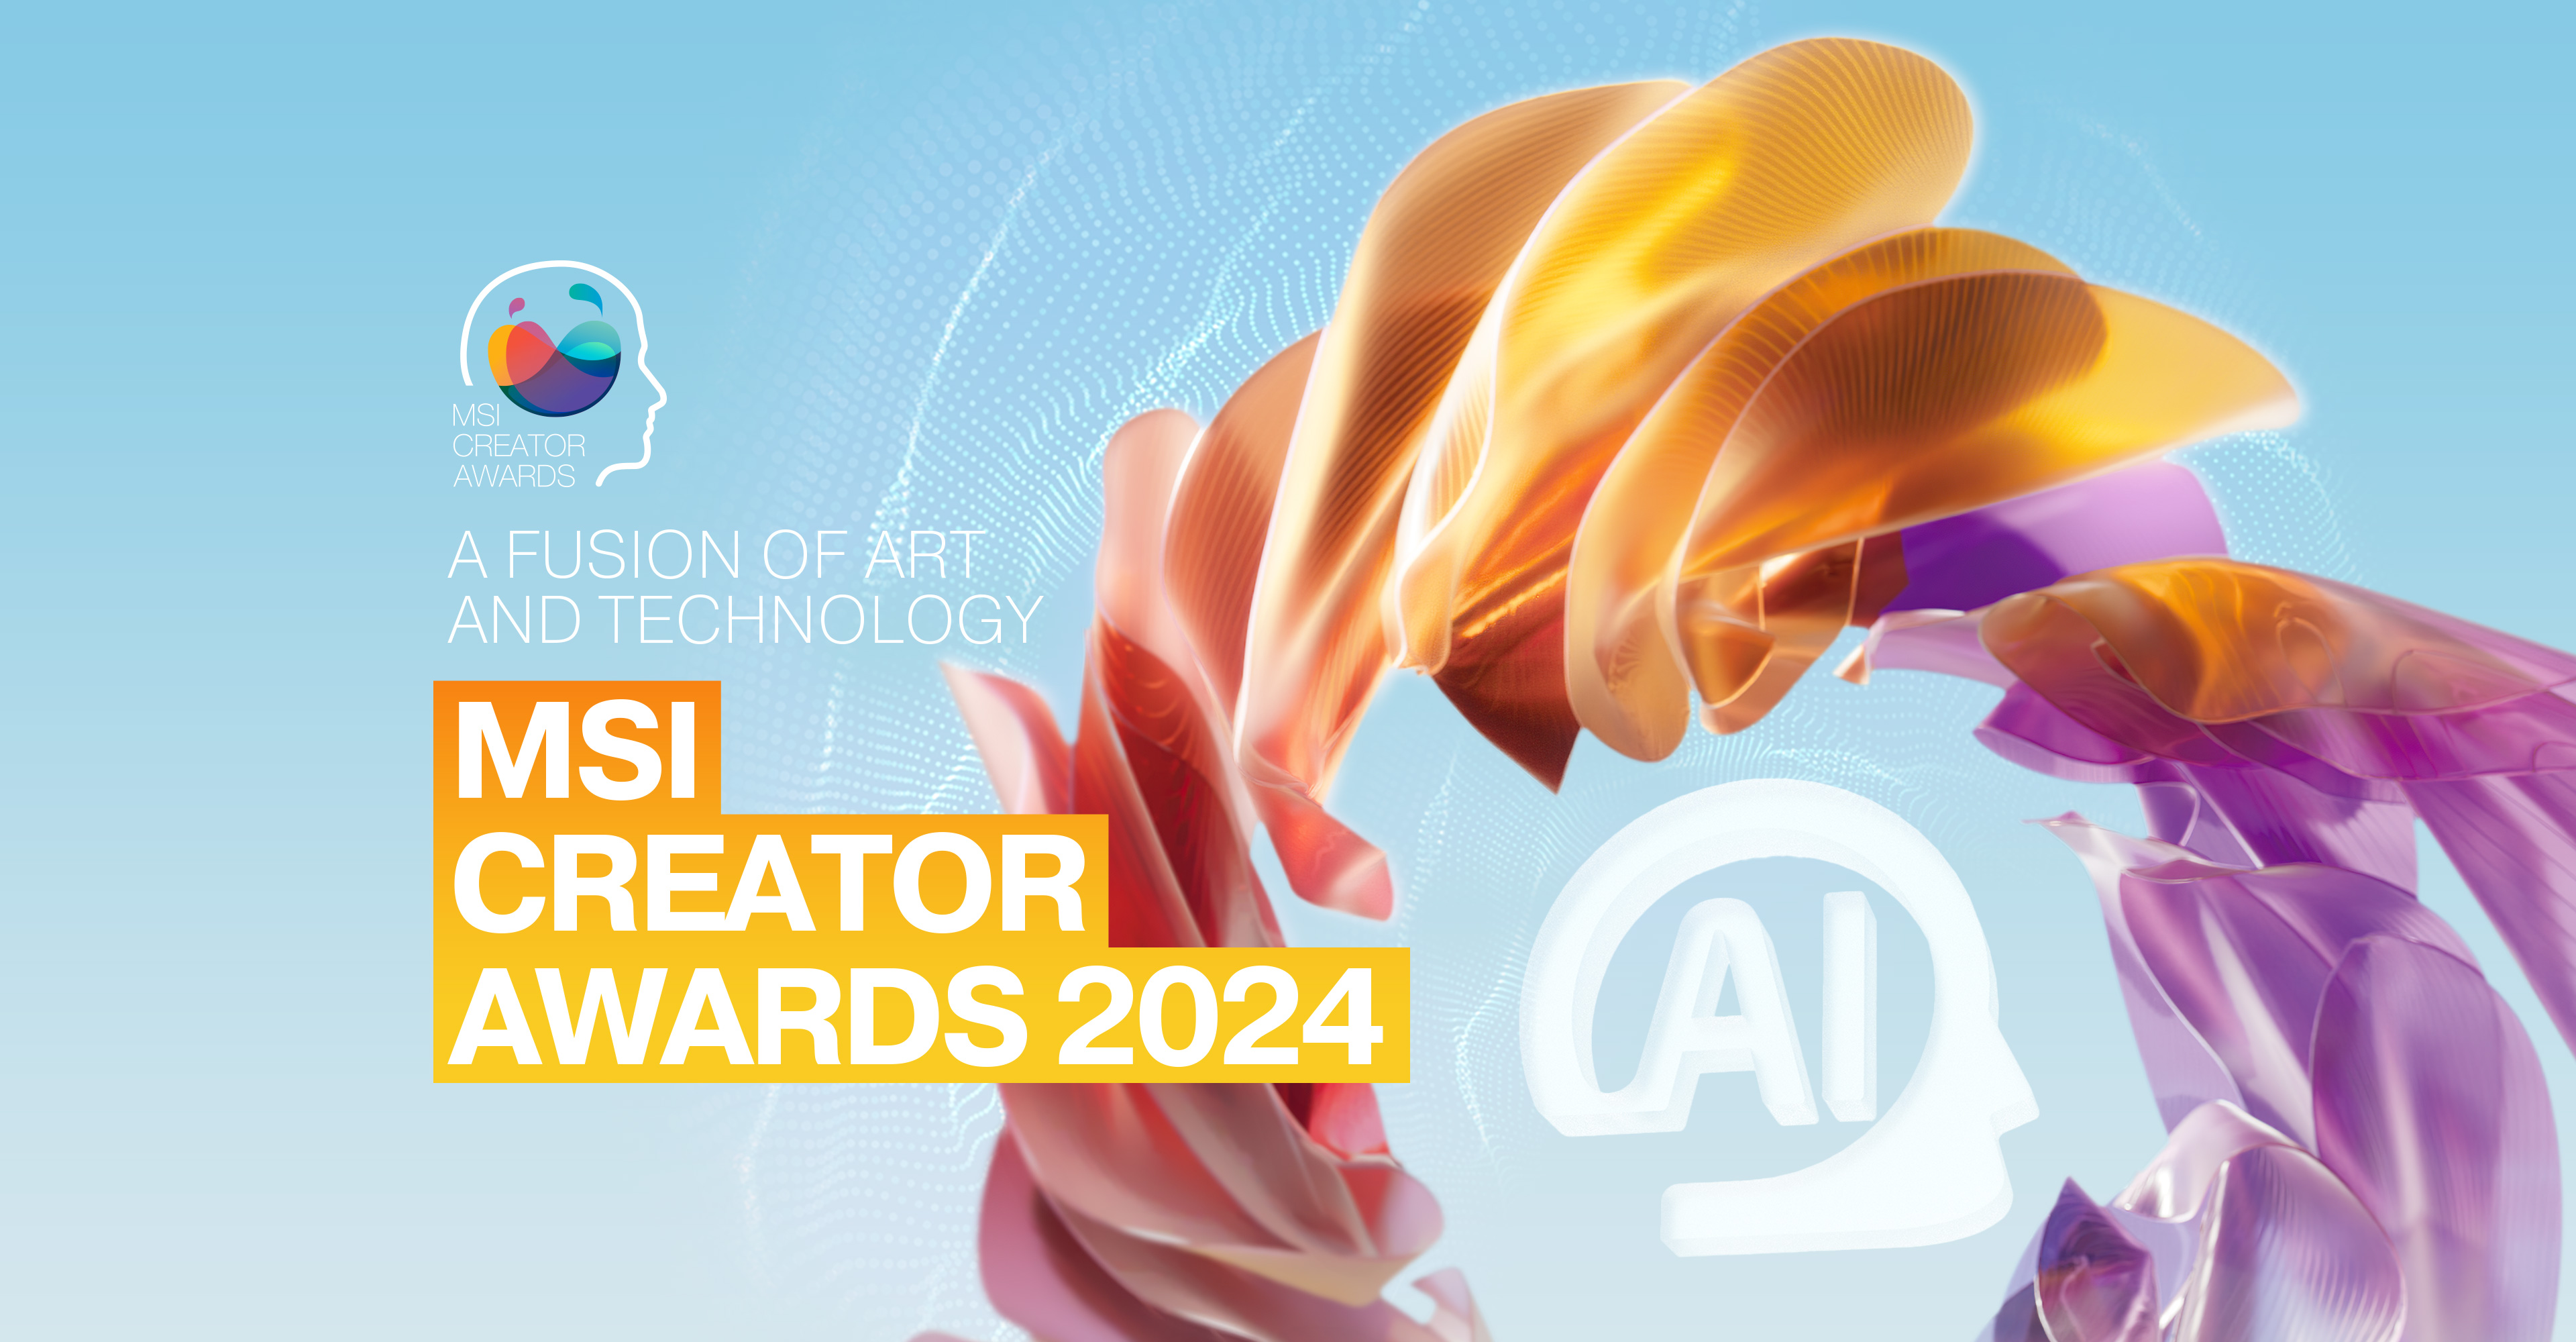 00thumb ยกระดับจินตนาการของคุณไปอีกขั้นที่กับการสร้างสรรค์ครั้งใหม่จาก MSI Creator Awards 2024 เปิดรับสมัครผู้เข้าแข่งขันแล้ววันนี้!